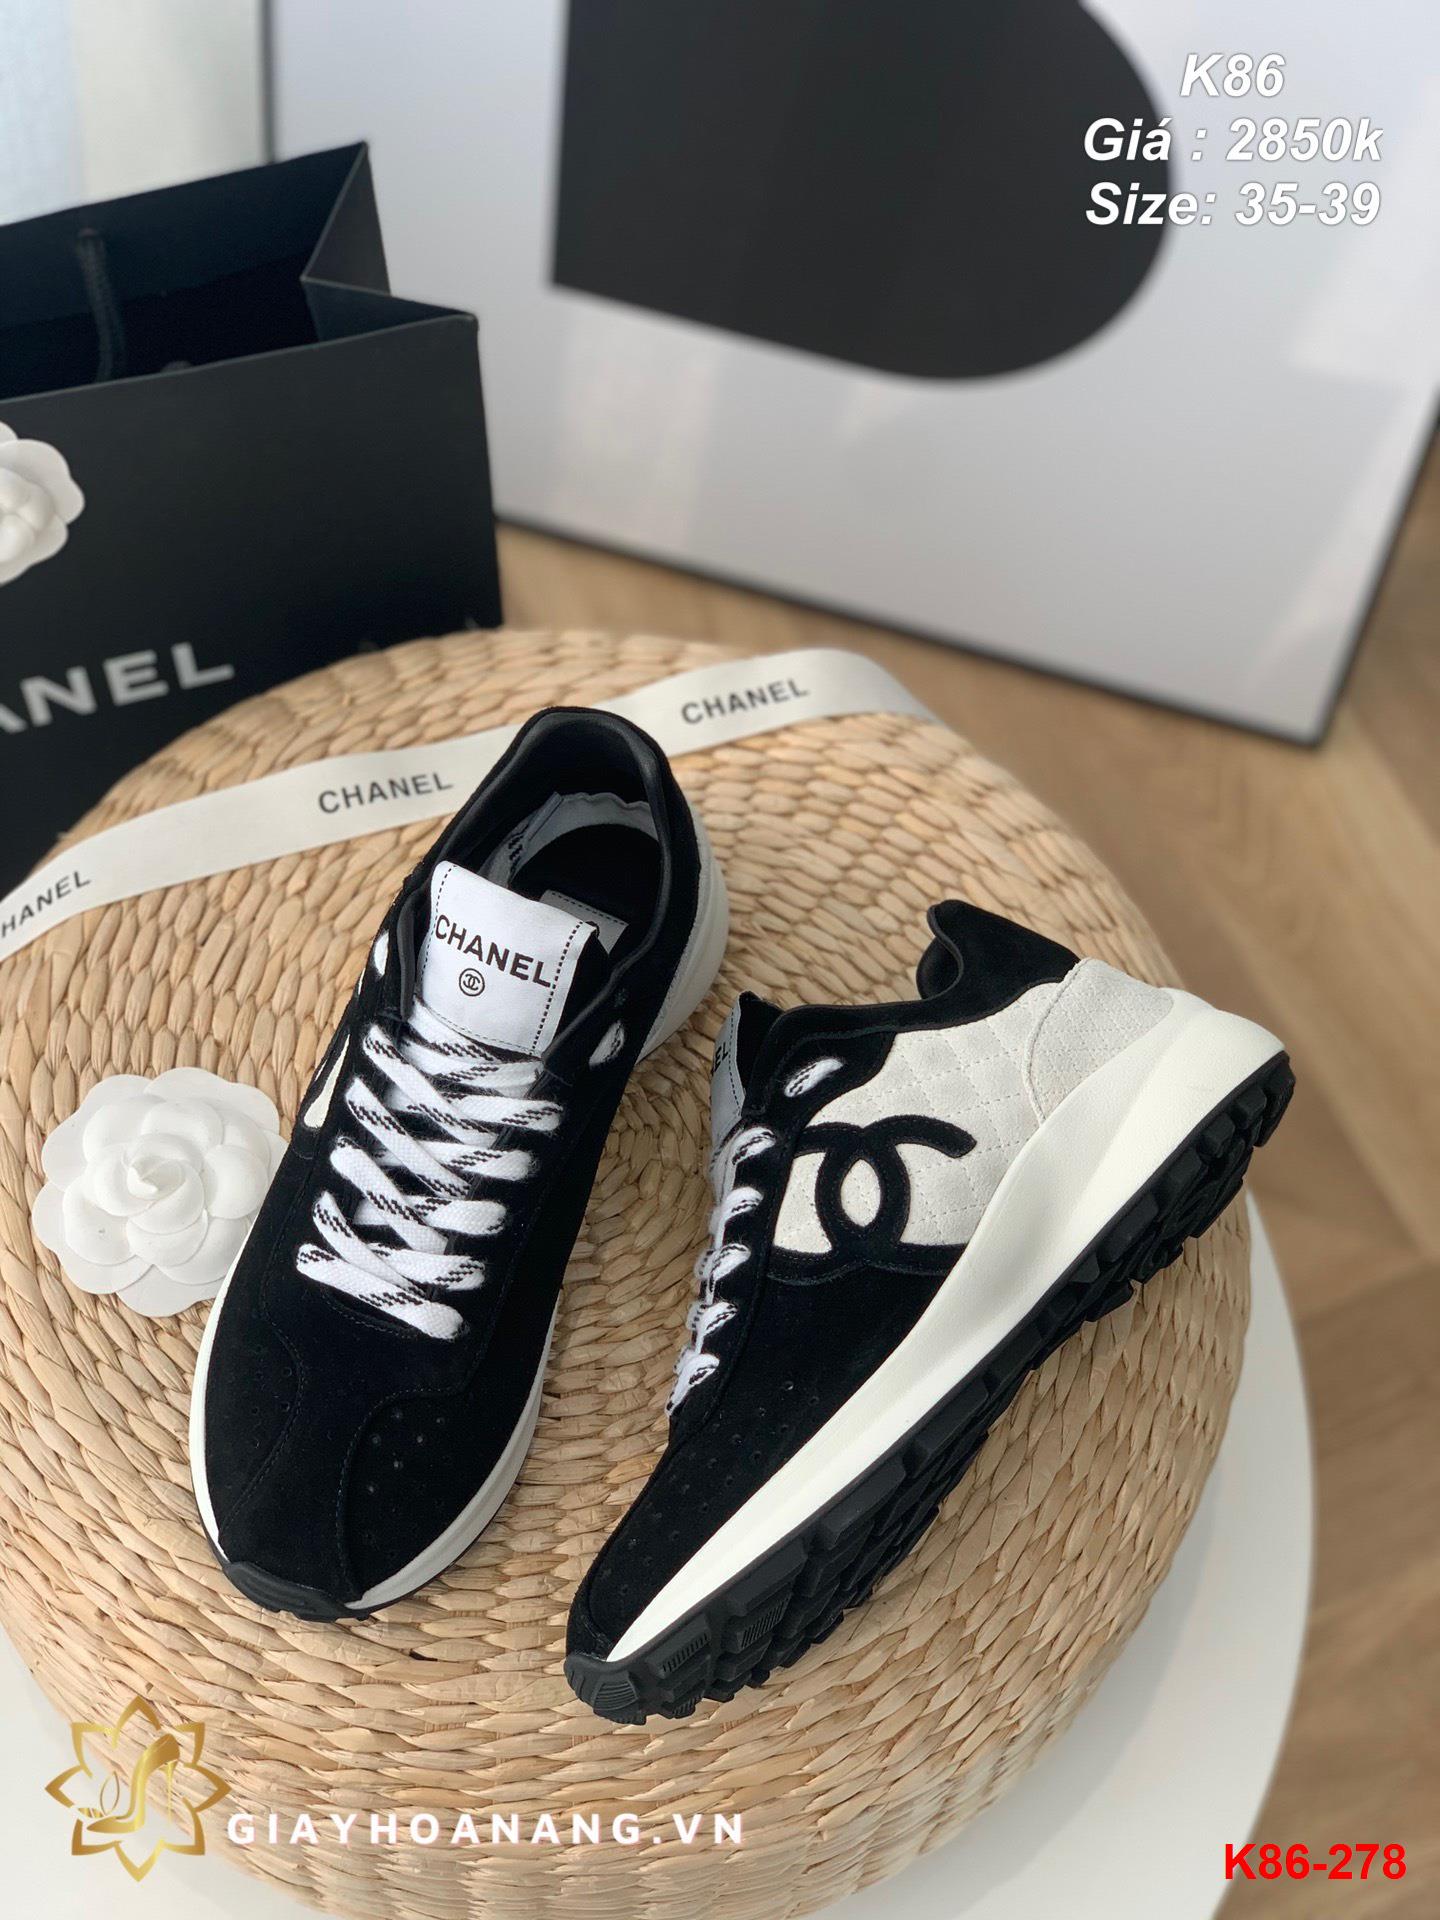 K86-278 Chanel giày thể thao siêu cấp